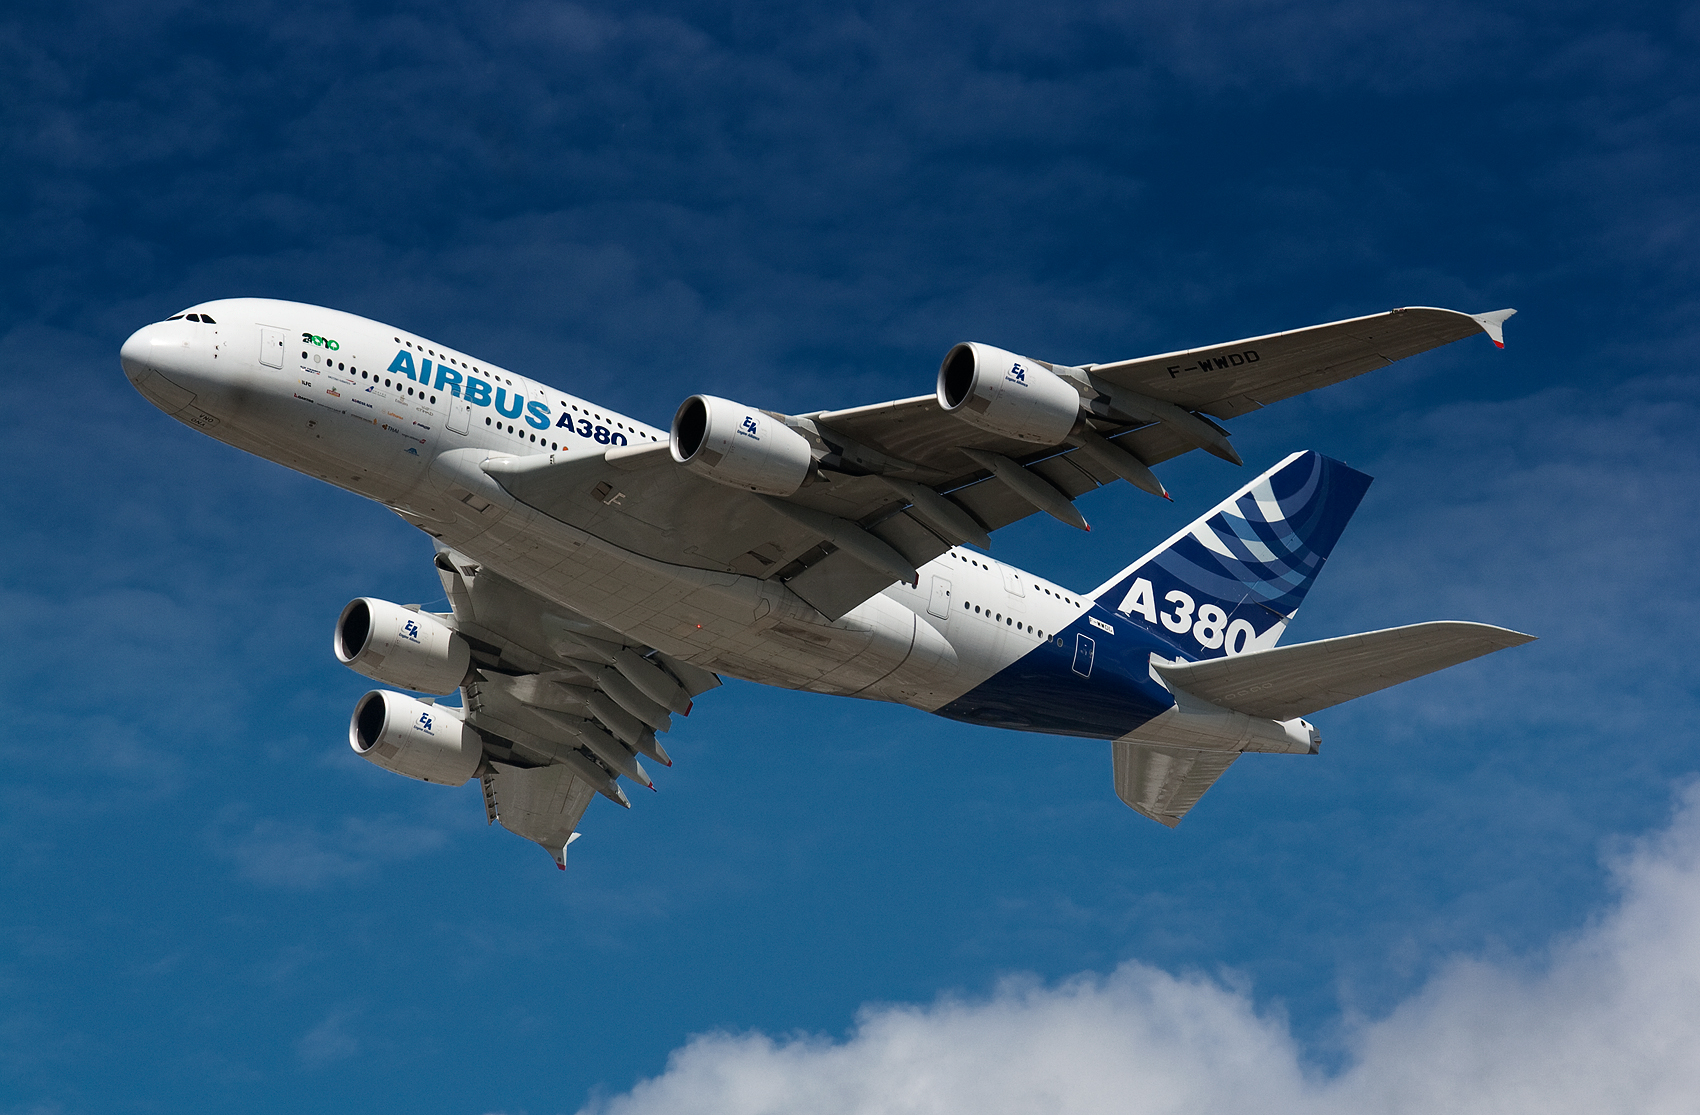 A380 초도 비행